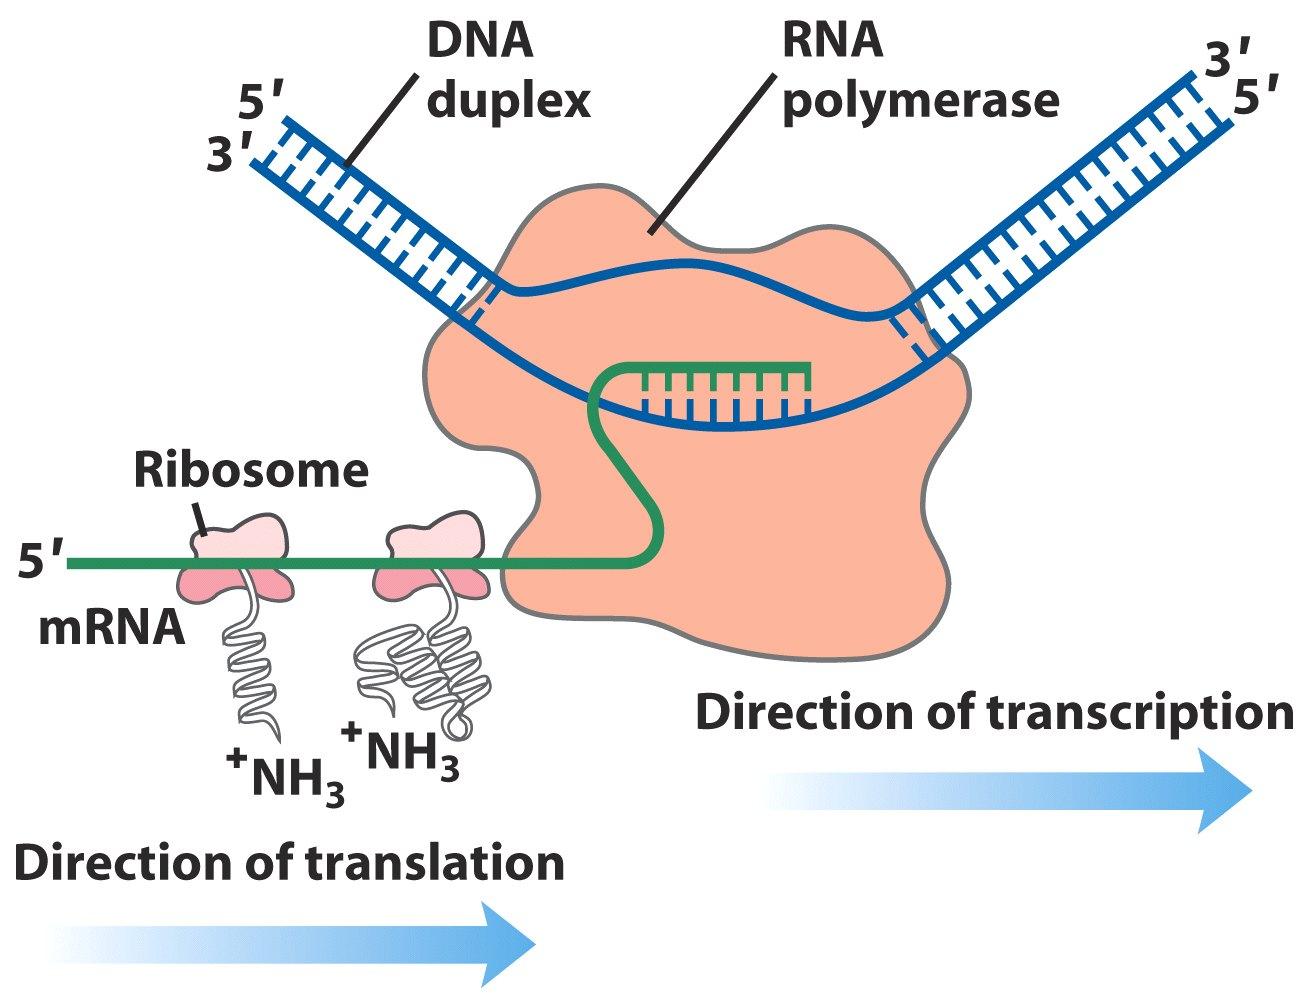 A transzkripció és transzláció együttes folyamata DNS duplex